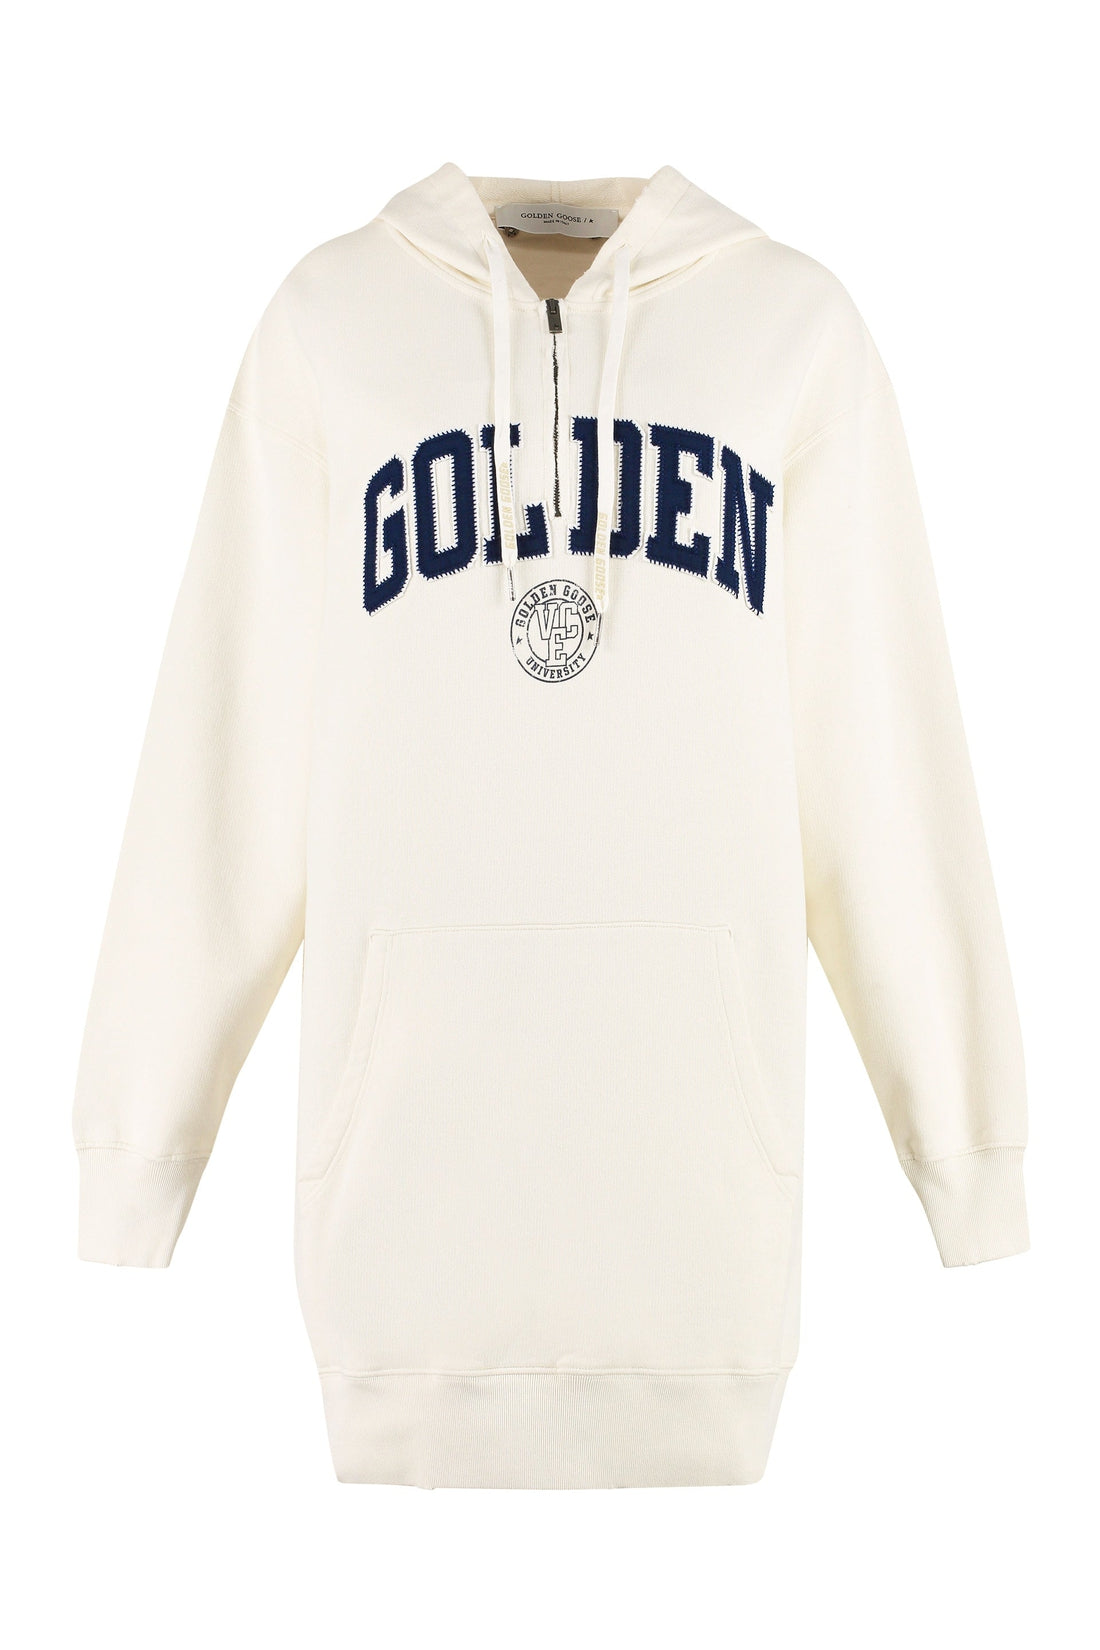 Golden Goose-OUTLET-SALE-Geneve Logo print cotton sweatdress-ARCHIVIST